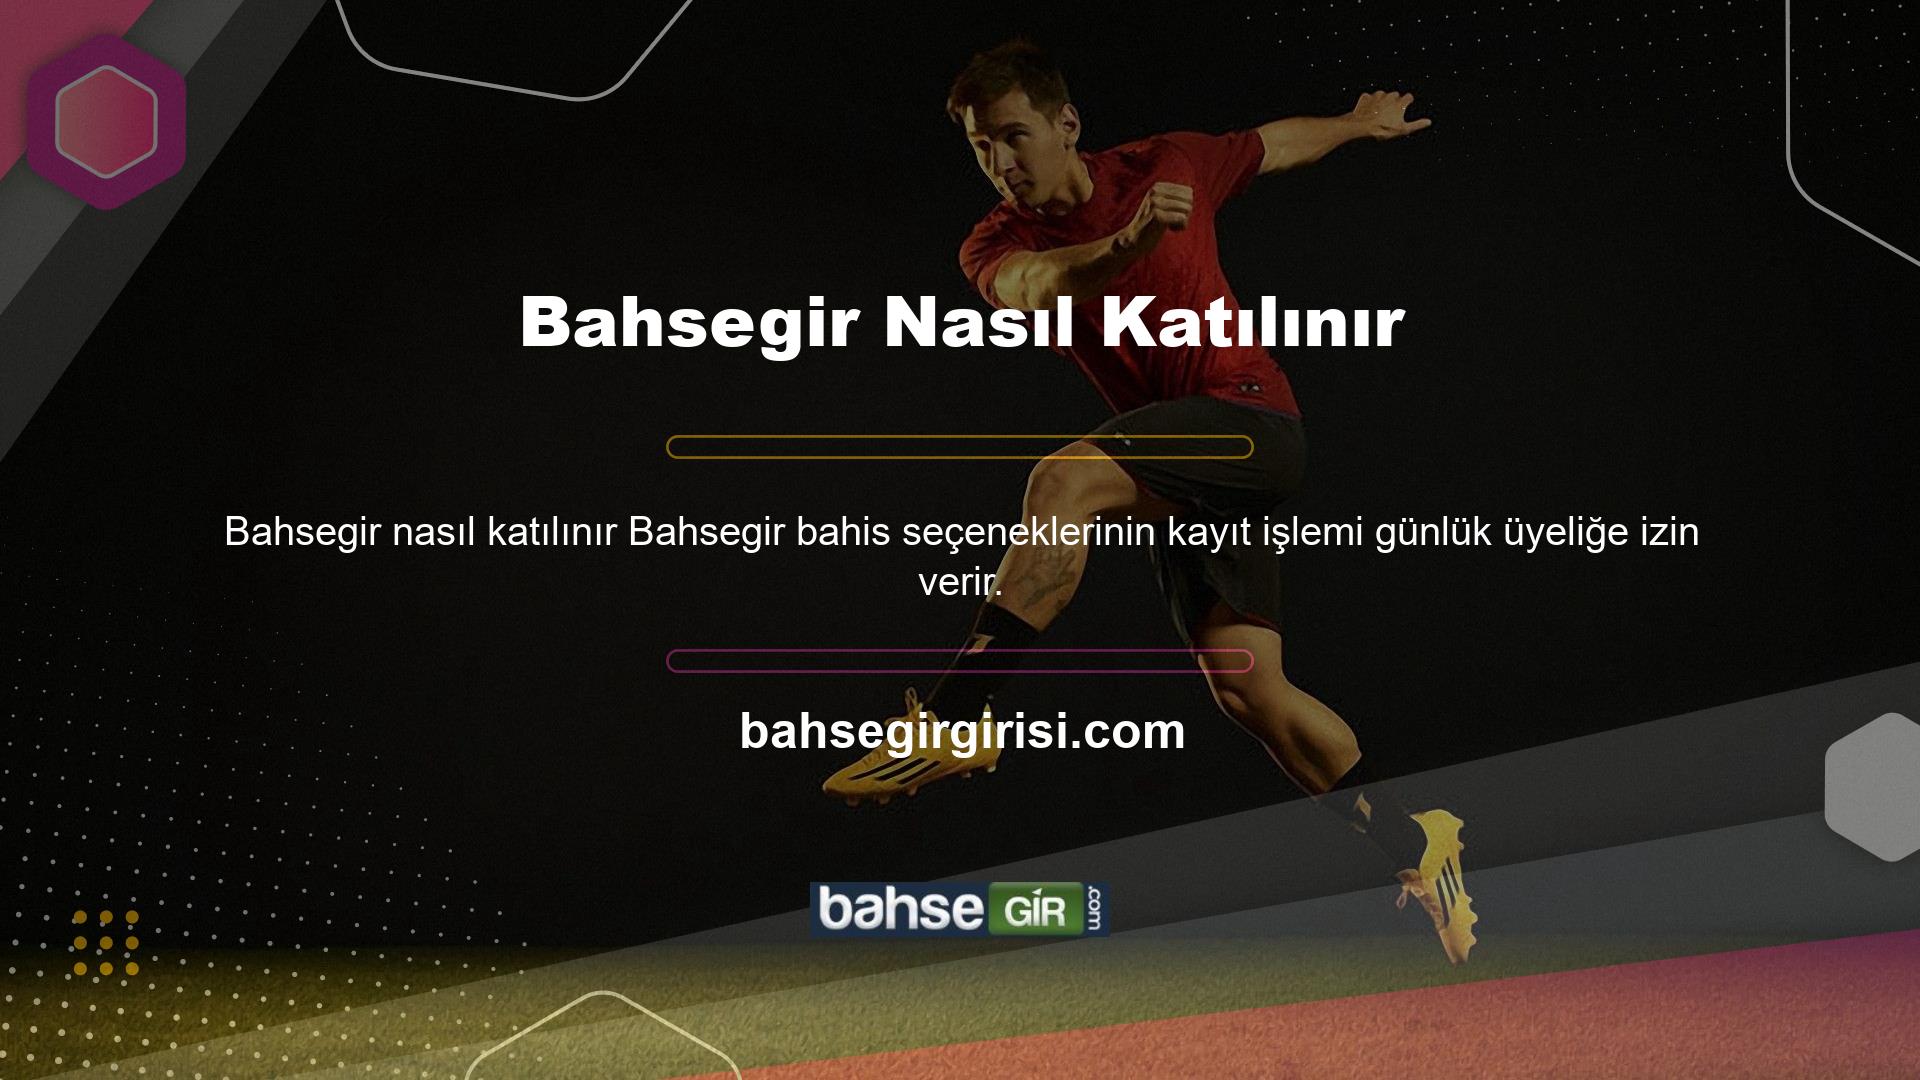 Bahsegir, futbol da dahil olmak üzere çeşitli spor dallarına canlı bahis sunmaktadır